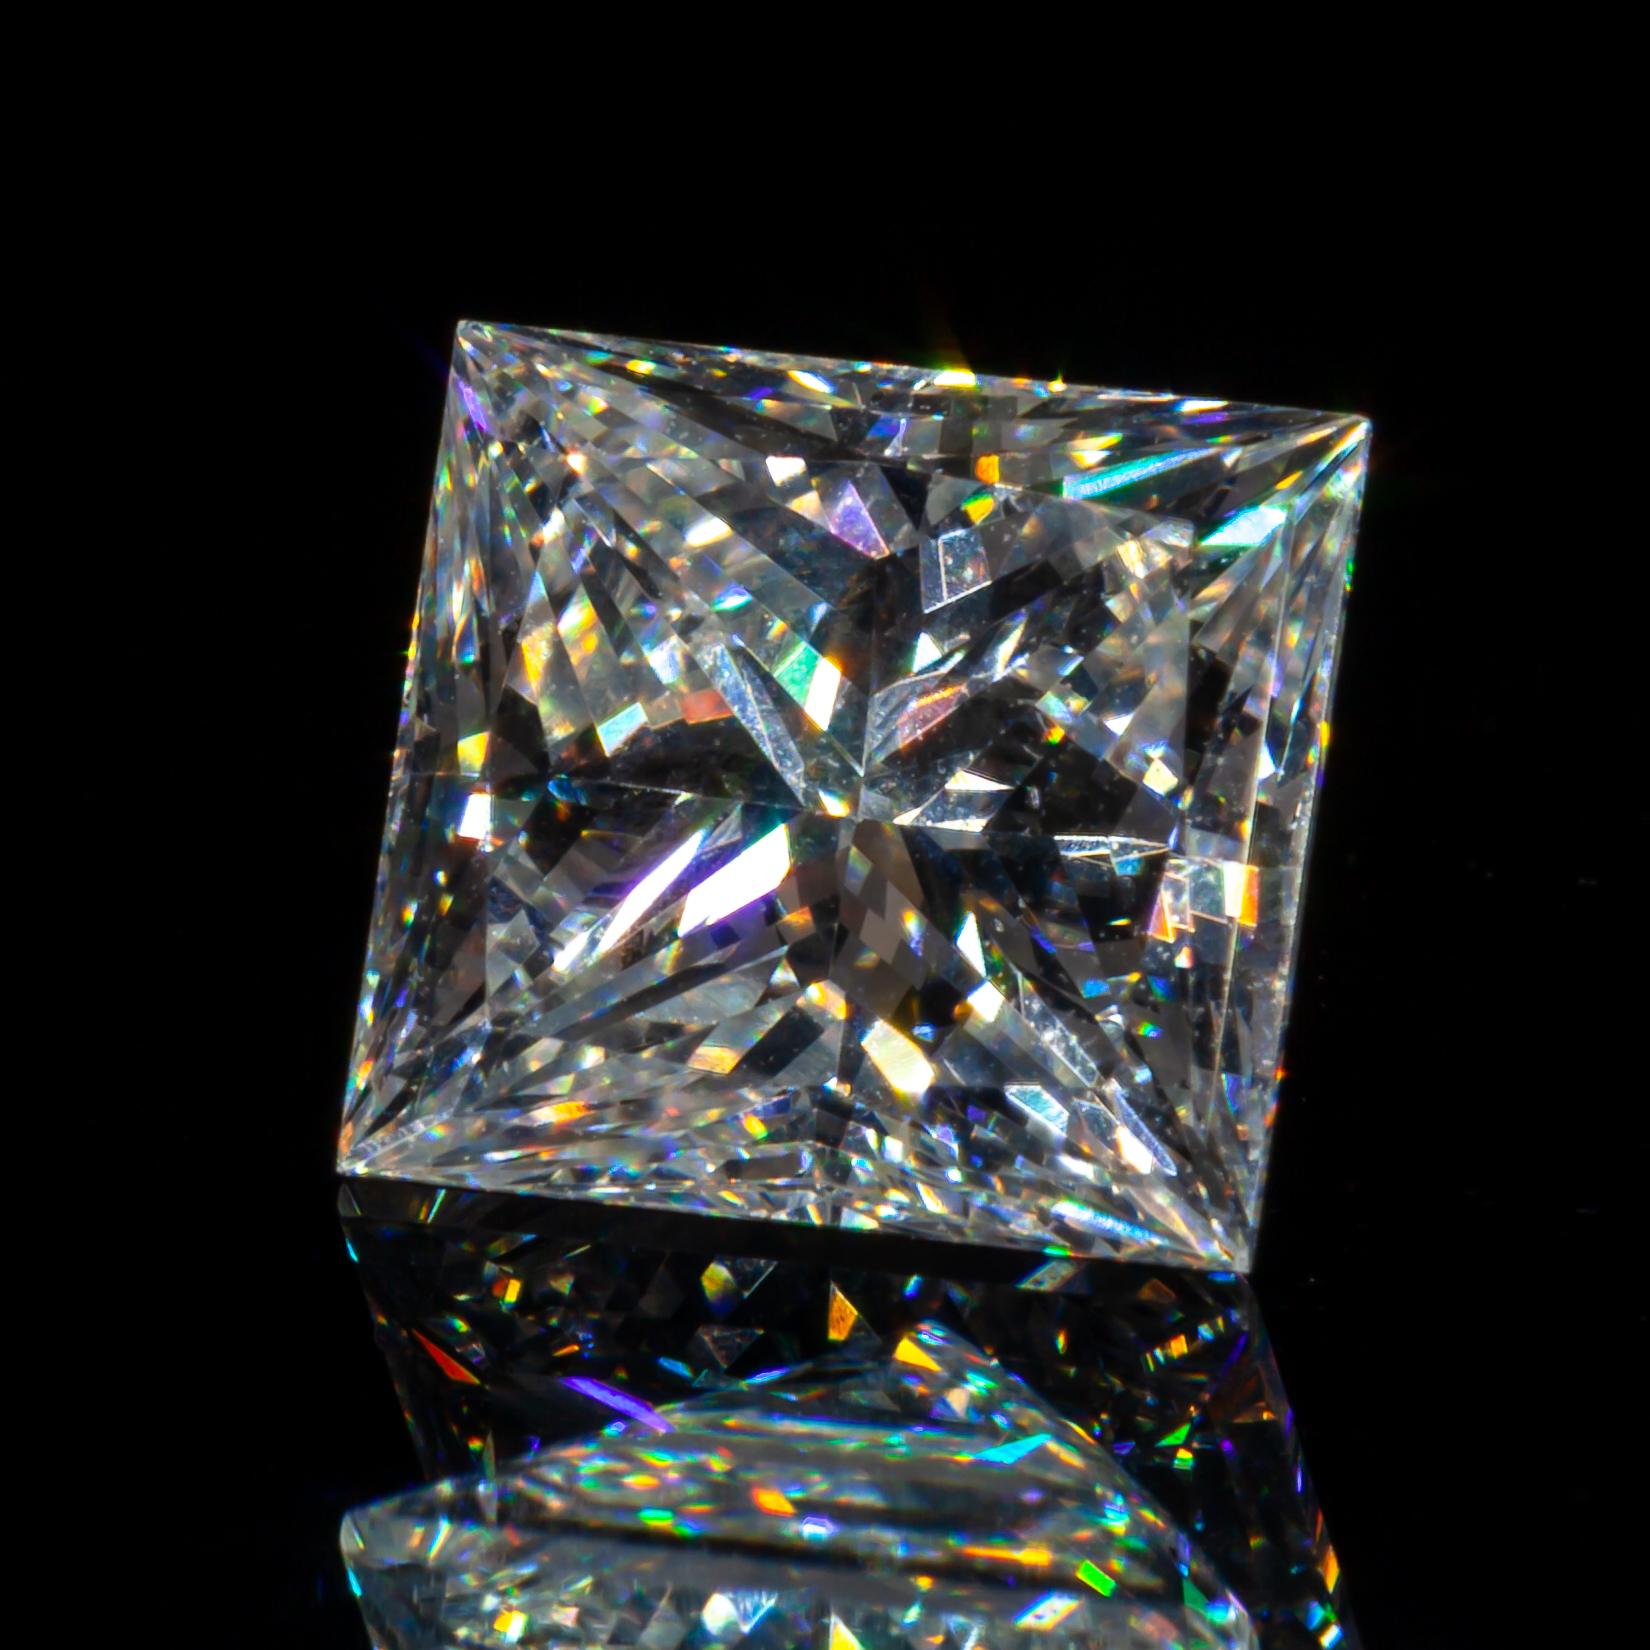 Diamant taille princesse non serti de 1,09 carat F/ VS2 certifié GIA

Informations générales sur le diamant
Taille du diamant : Rectangulaire Modifié Brillant
Dimensions : 5.94  x  5.50  -  3.90 mm

Résultats de la classification des diamants
Poids